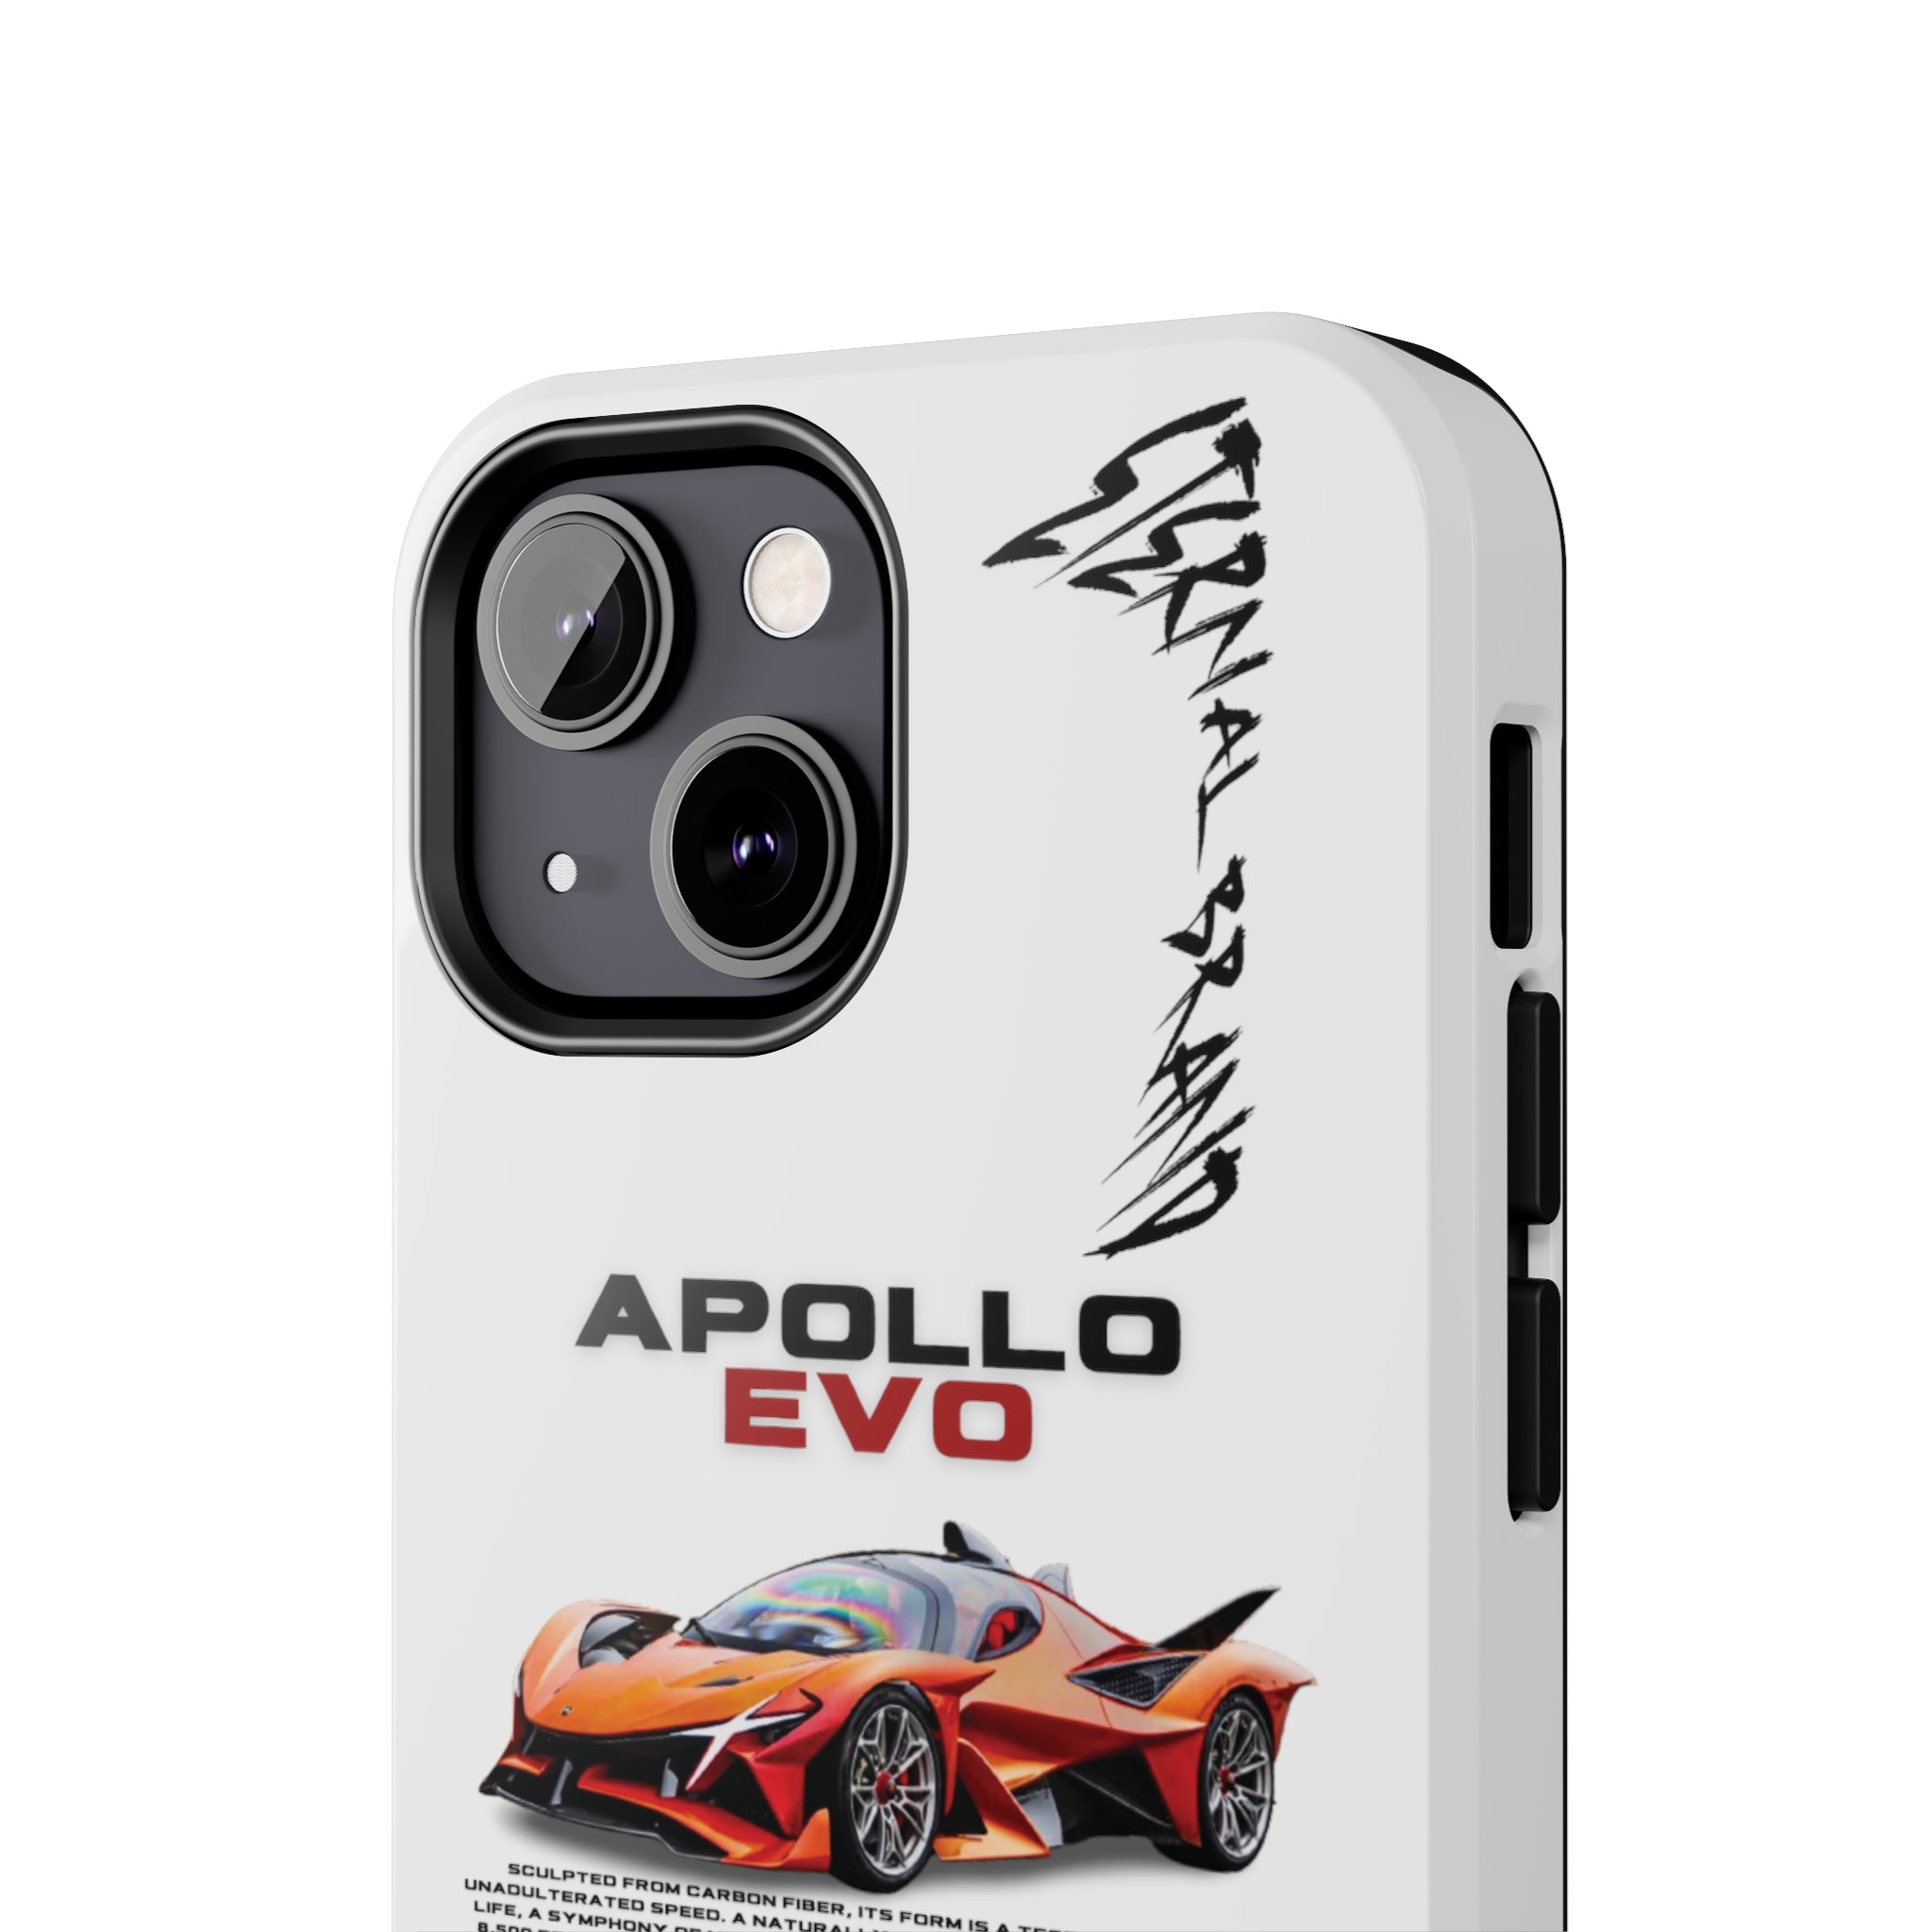 Apollo EVO "Deep Orange" "White"